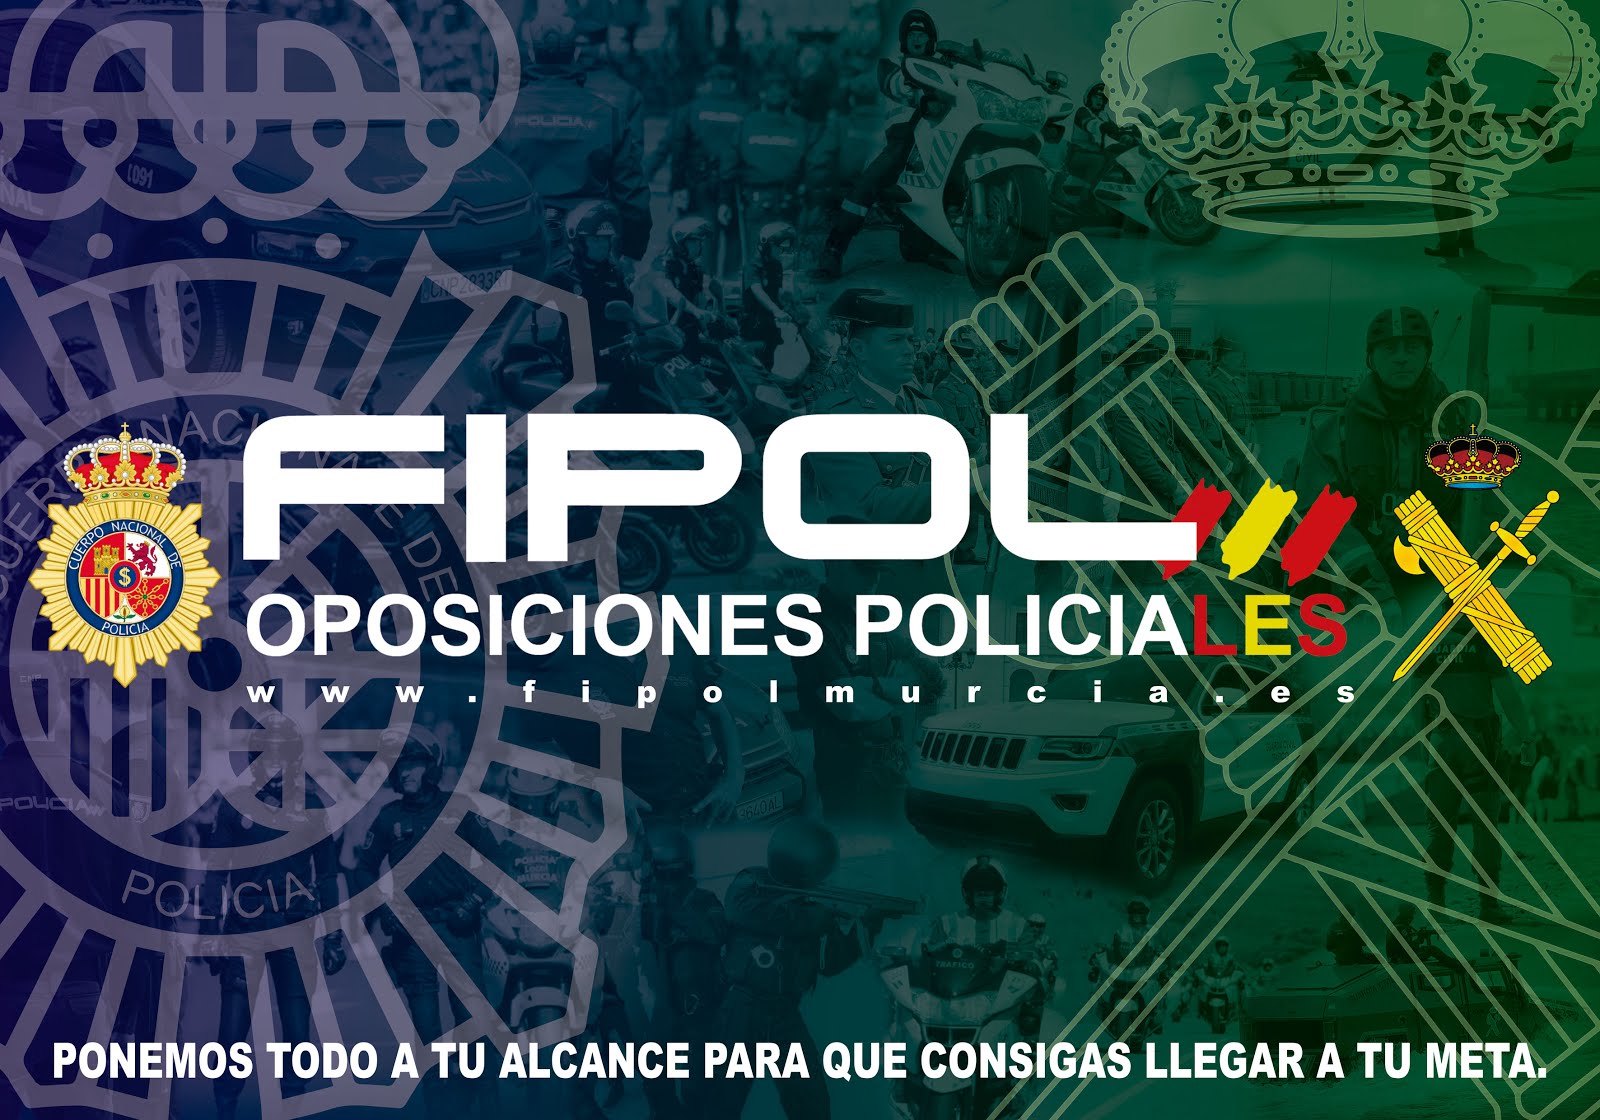 Blog del Centro de Oposiciones Policiales FIPOL